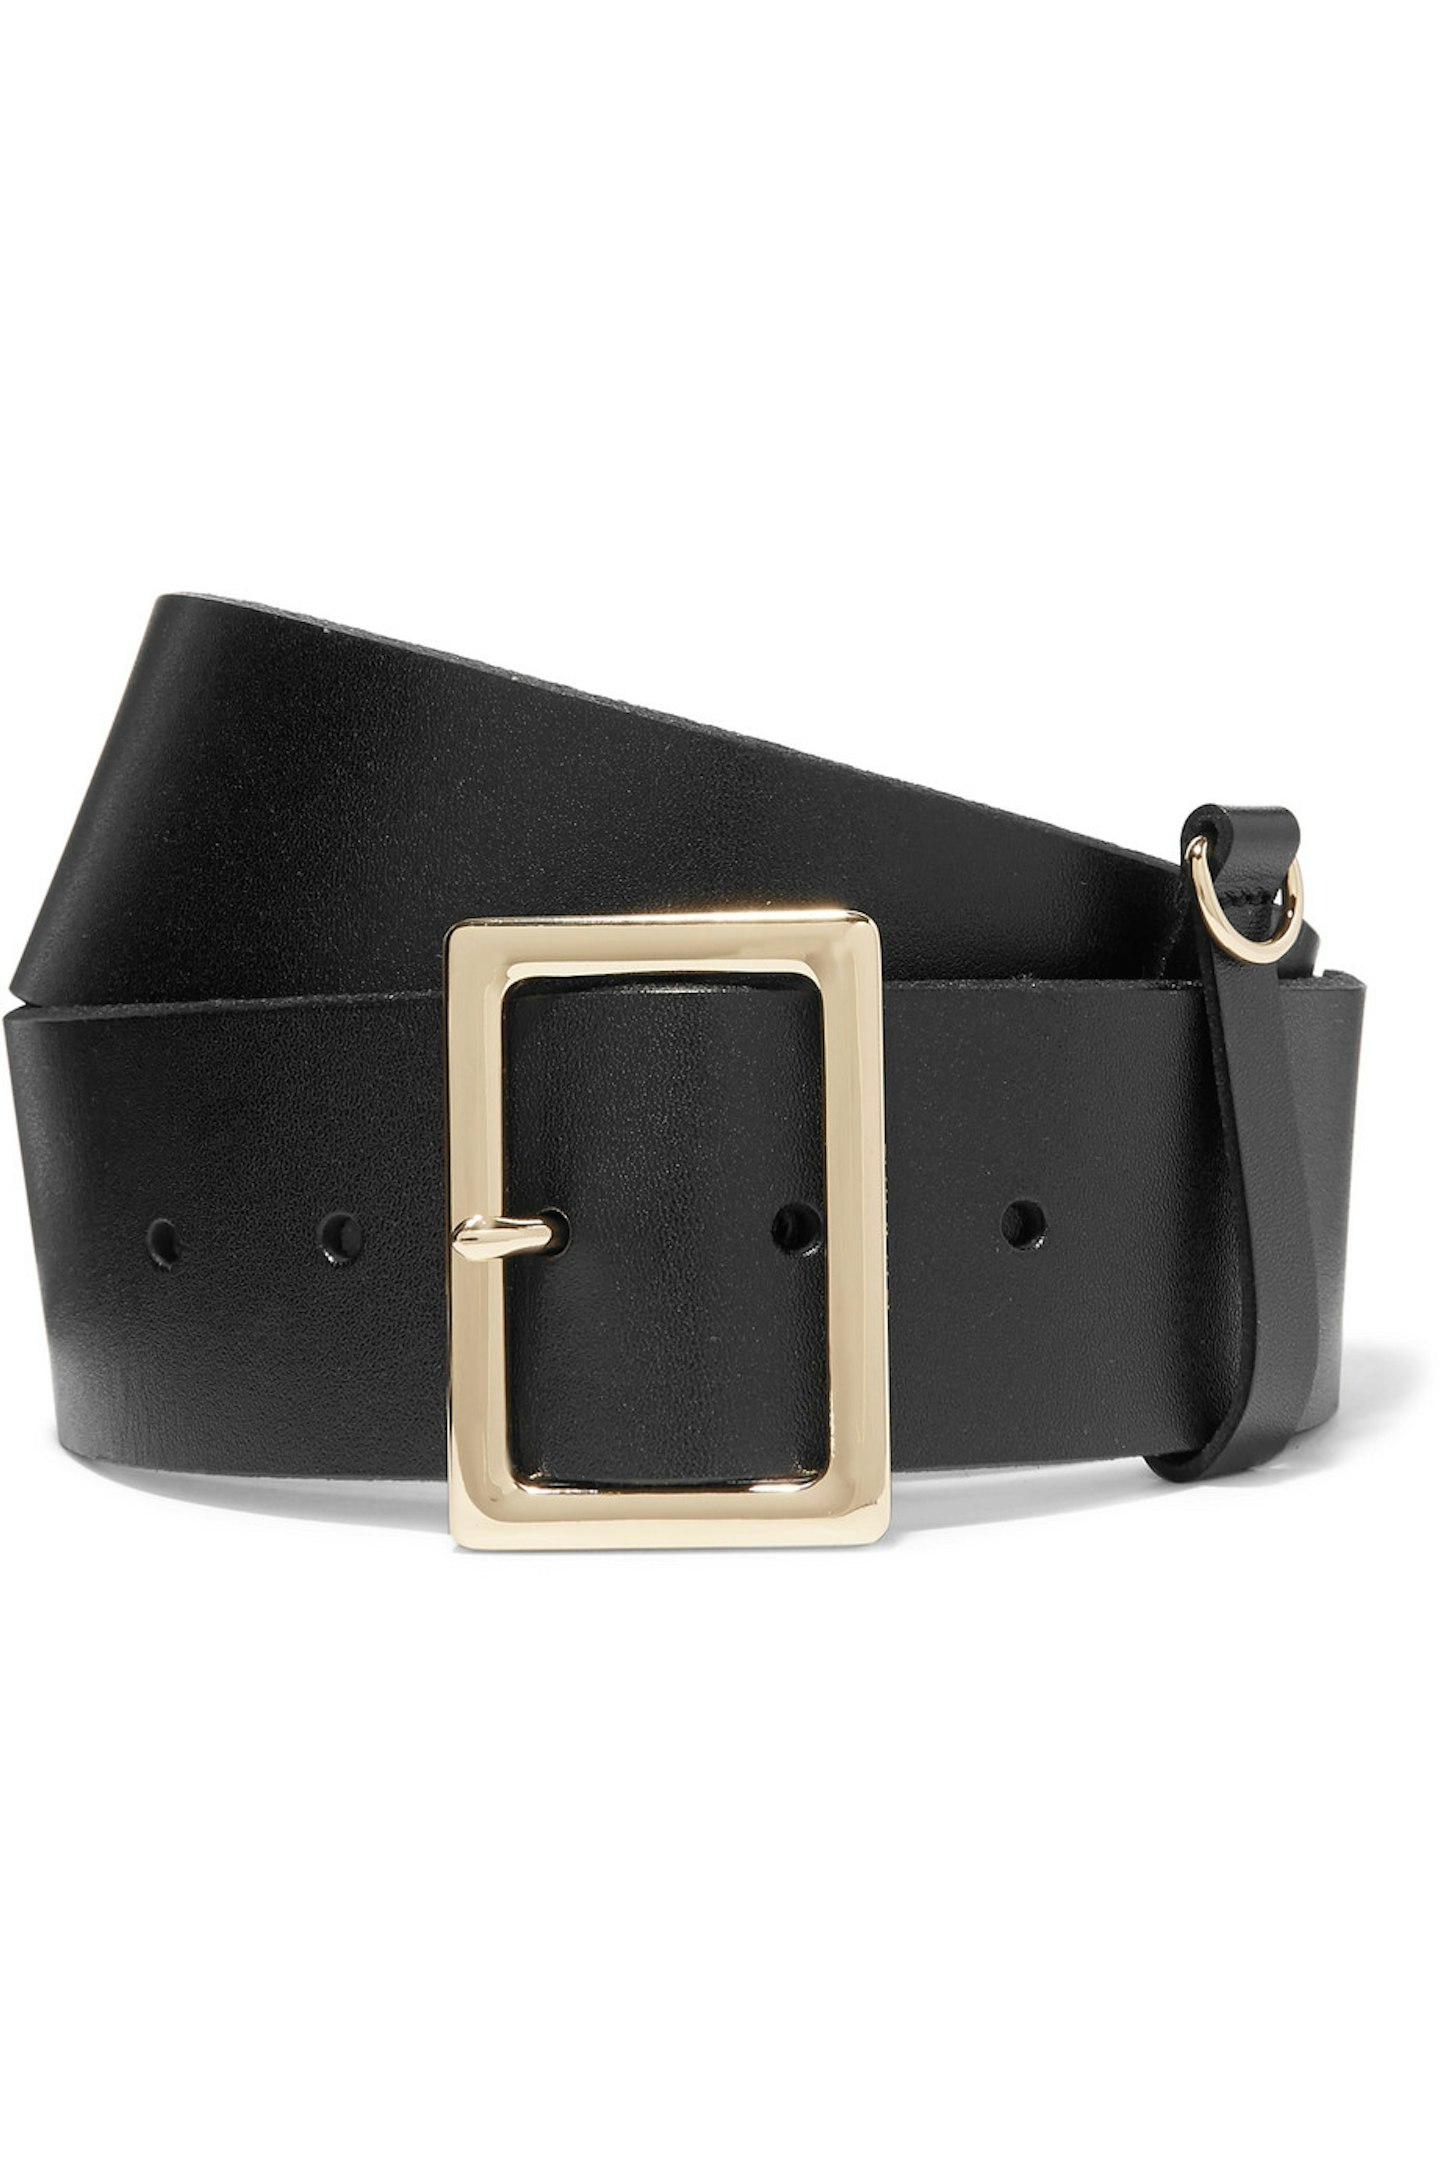 black leather frame belt